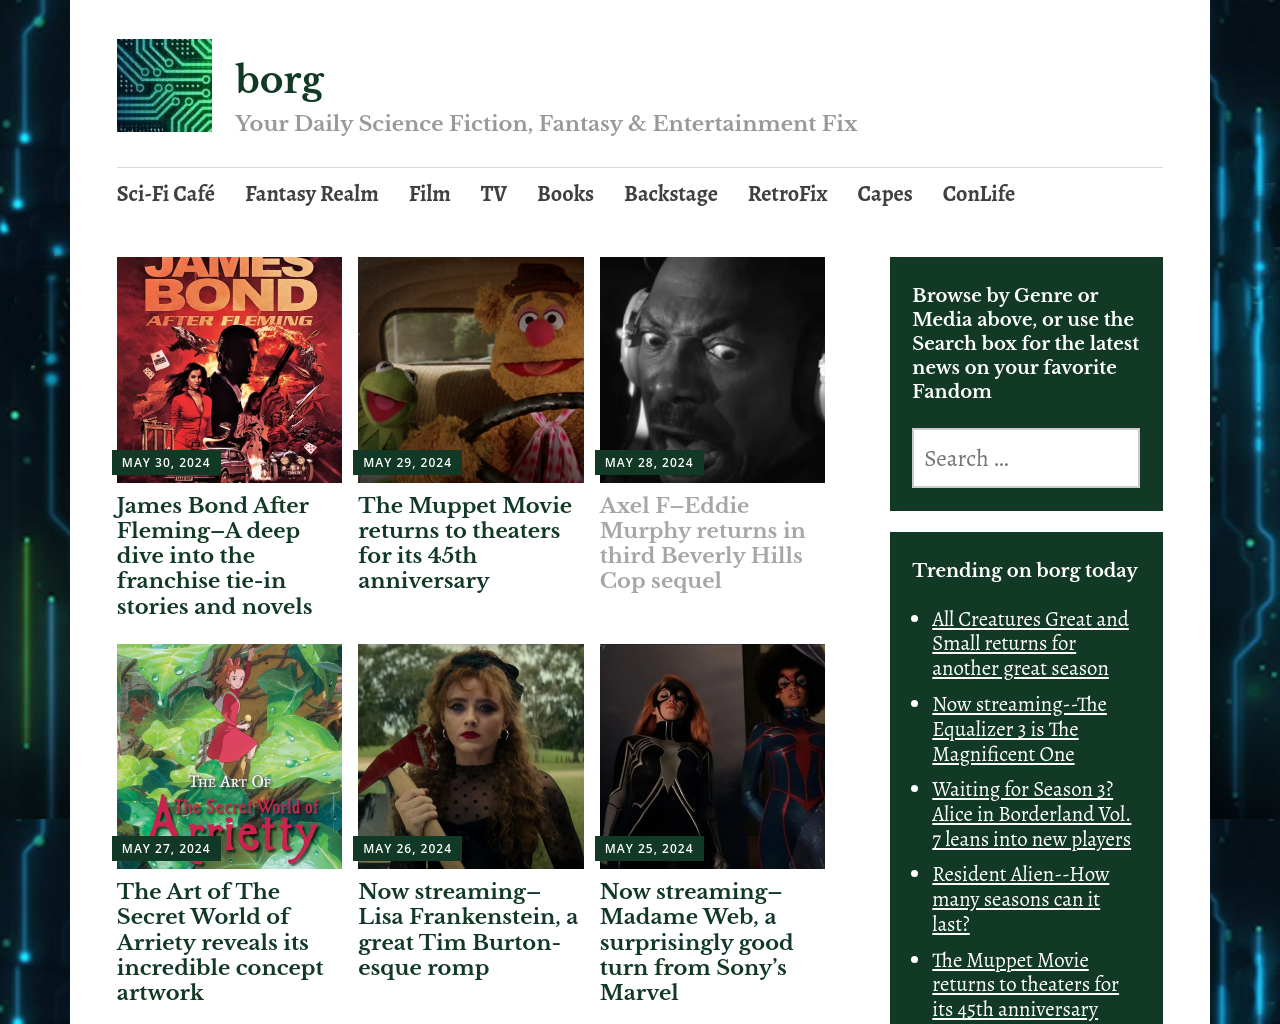 borg.com